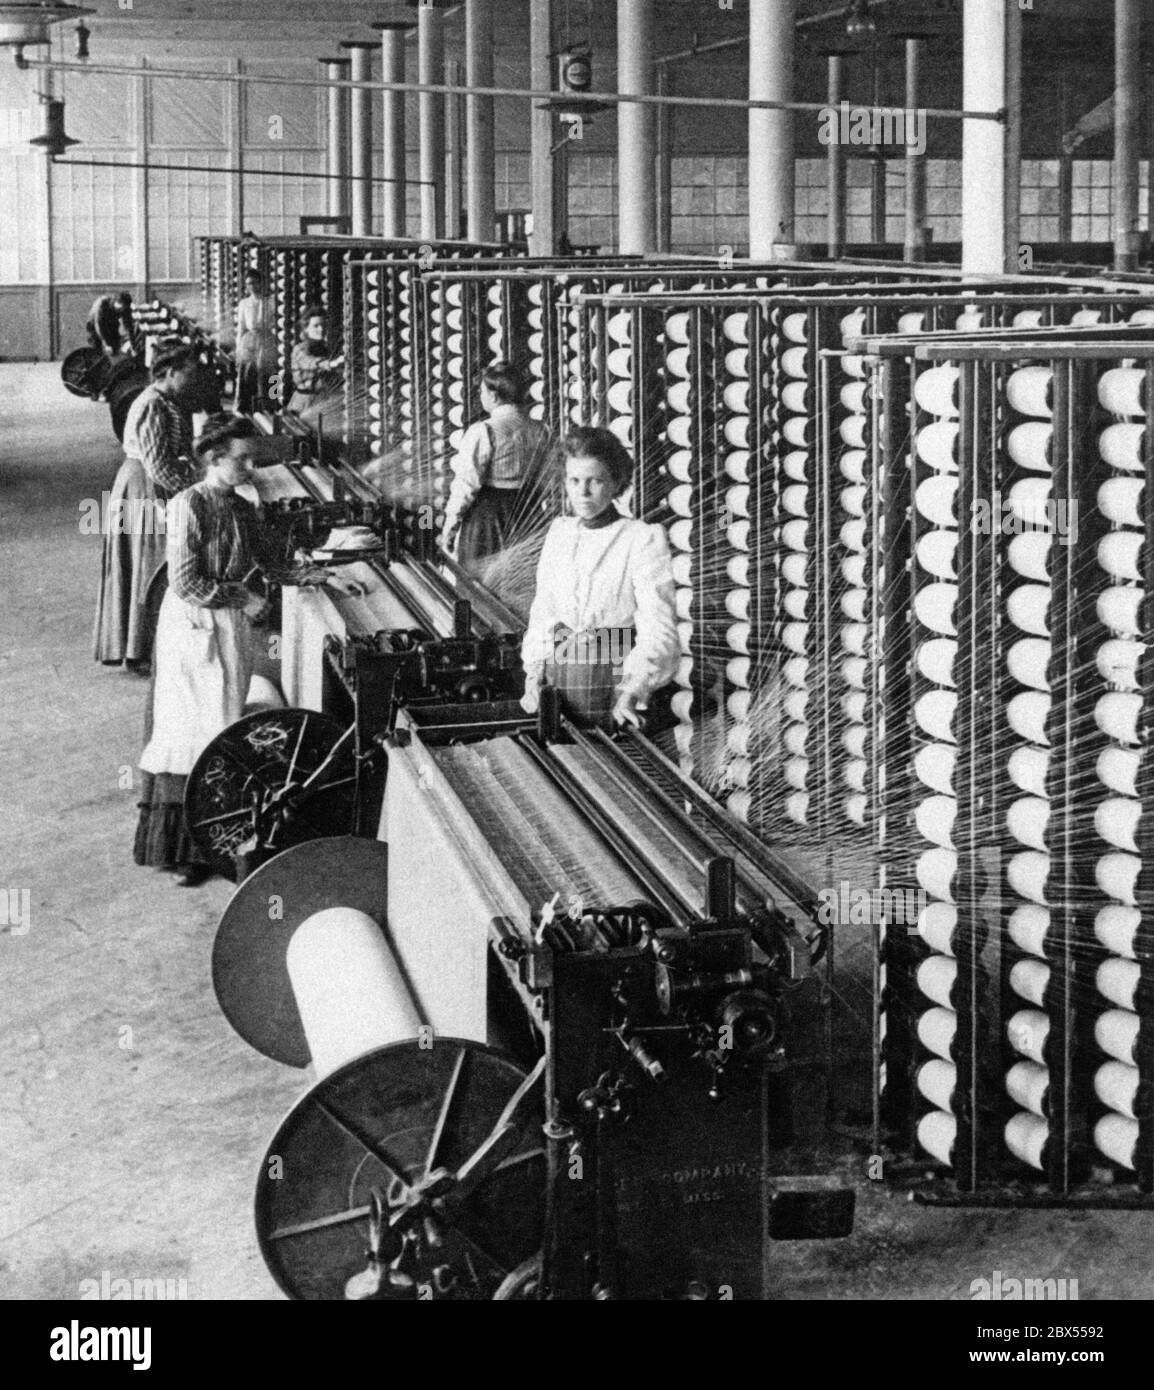 Dans une filature de coton, les travailleuses utilisent les machines de filature qui serpentent le fil dans le tissu. La photo a été prise en 1905. Banque D'Images